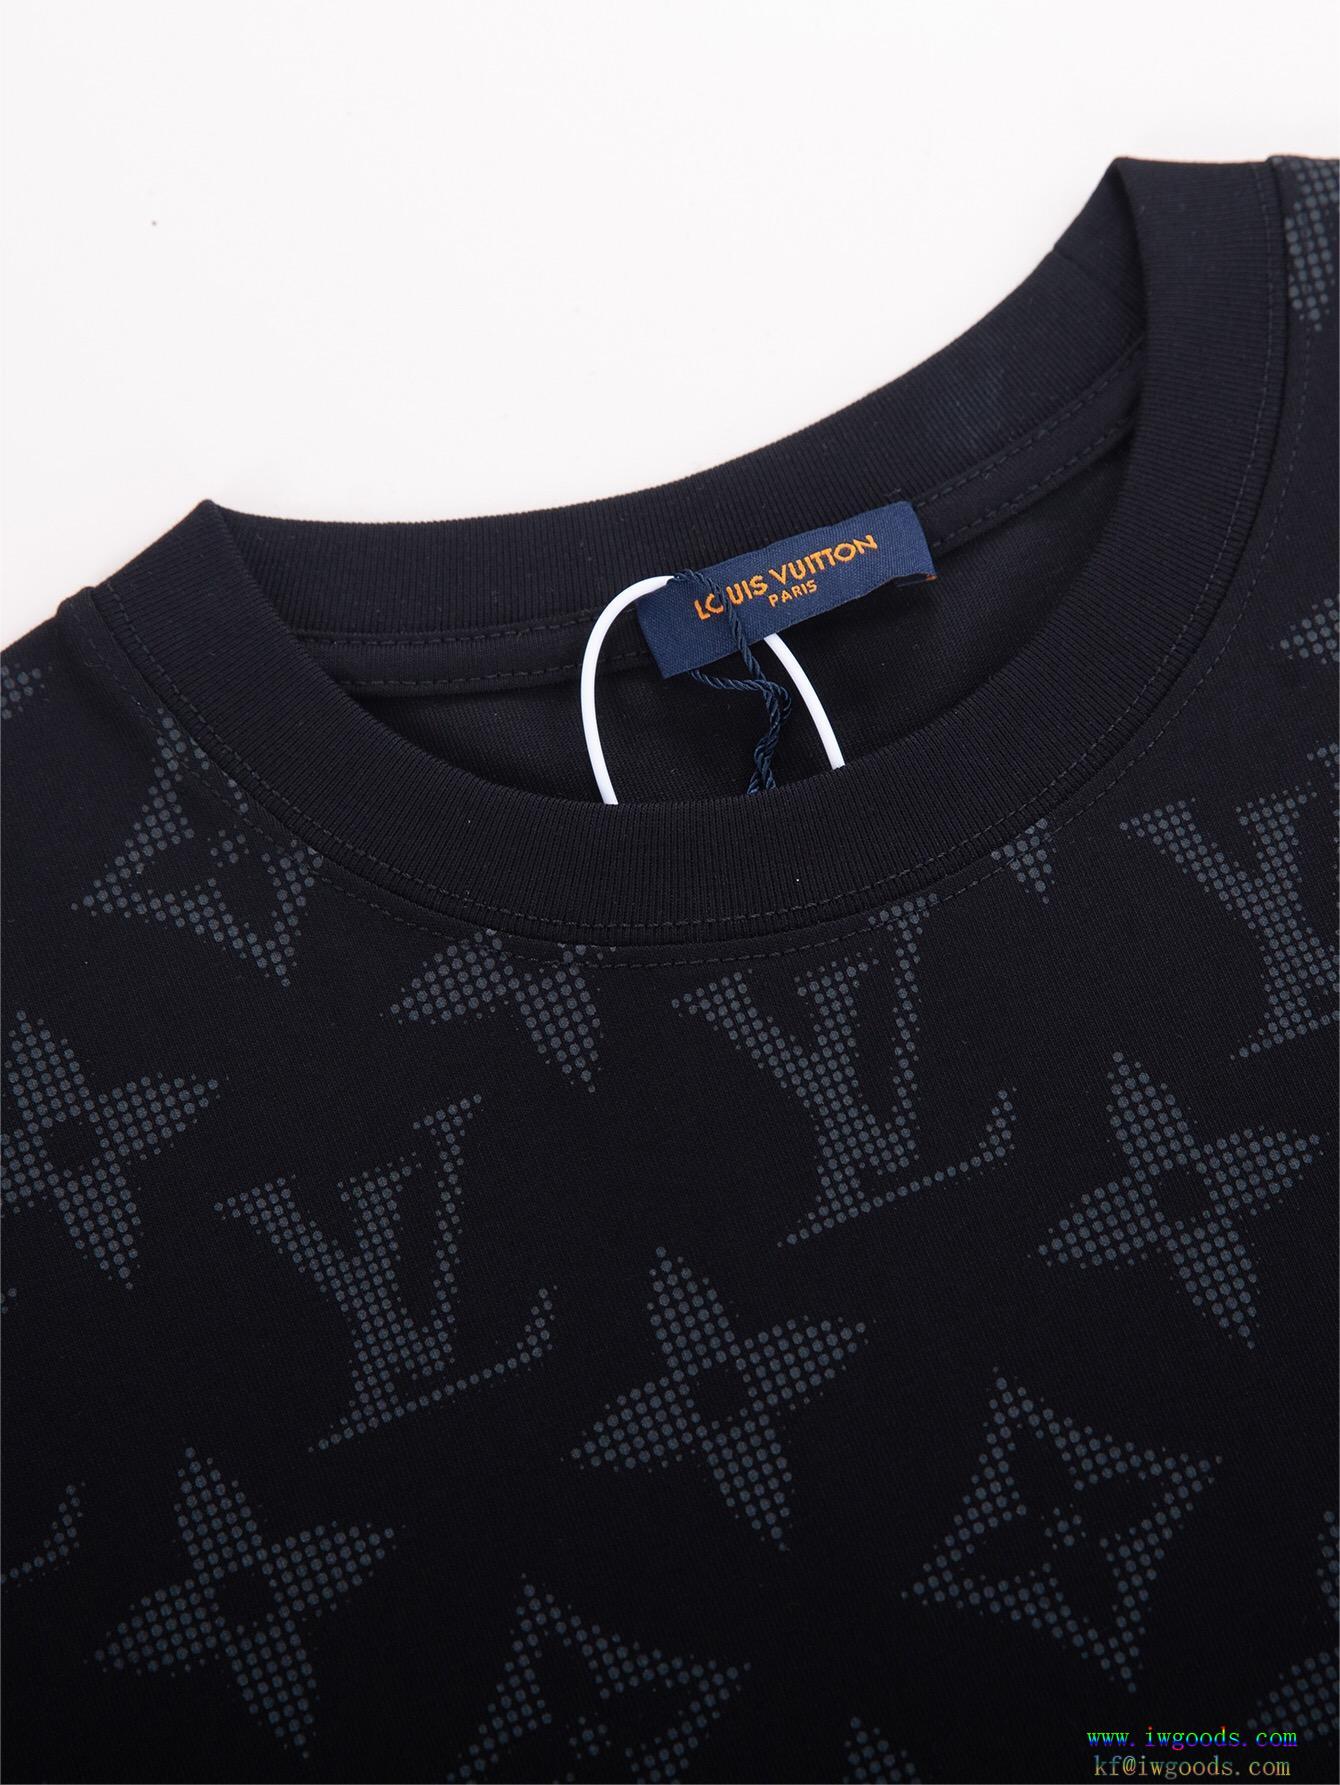 ルイヴィトンLOUIS VUITTONコピー ブランド 通販半袖tシャツ【ユニセックス】一気にトレンド感満載な着こなし通年使えるアイテム